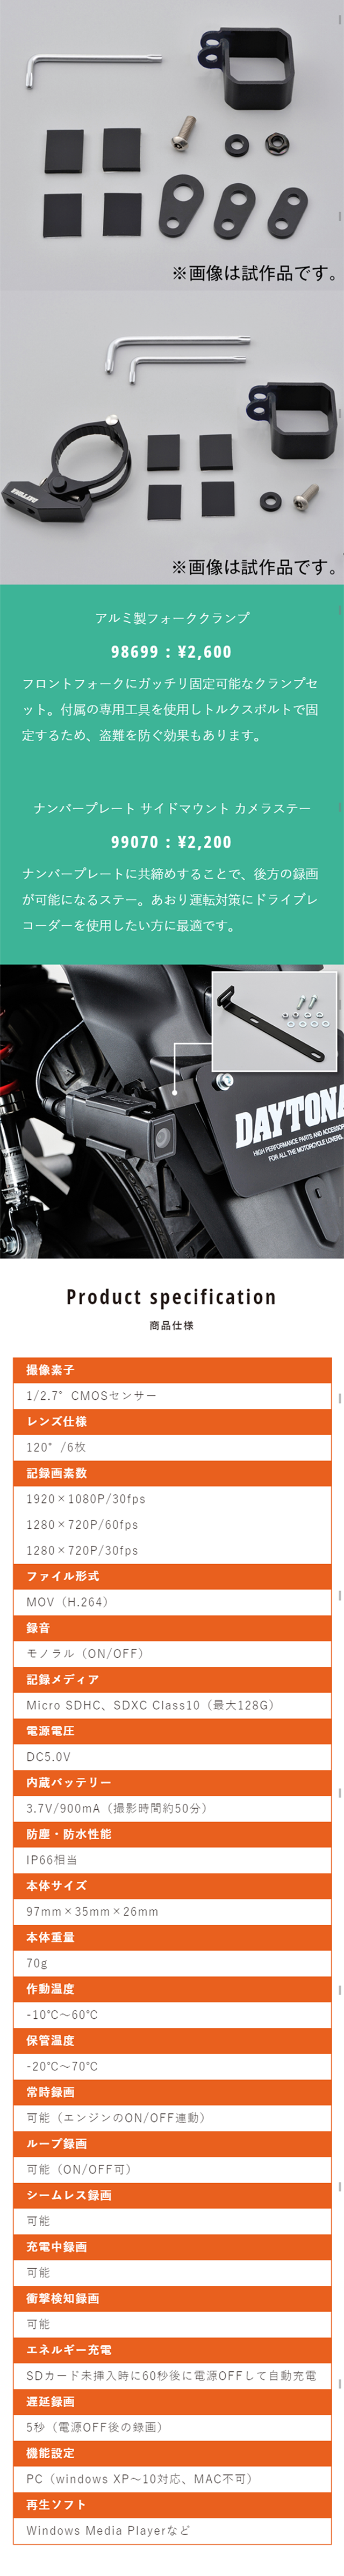 バイク専用ドライブレコーダー DDR-S100_sp_2